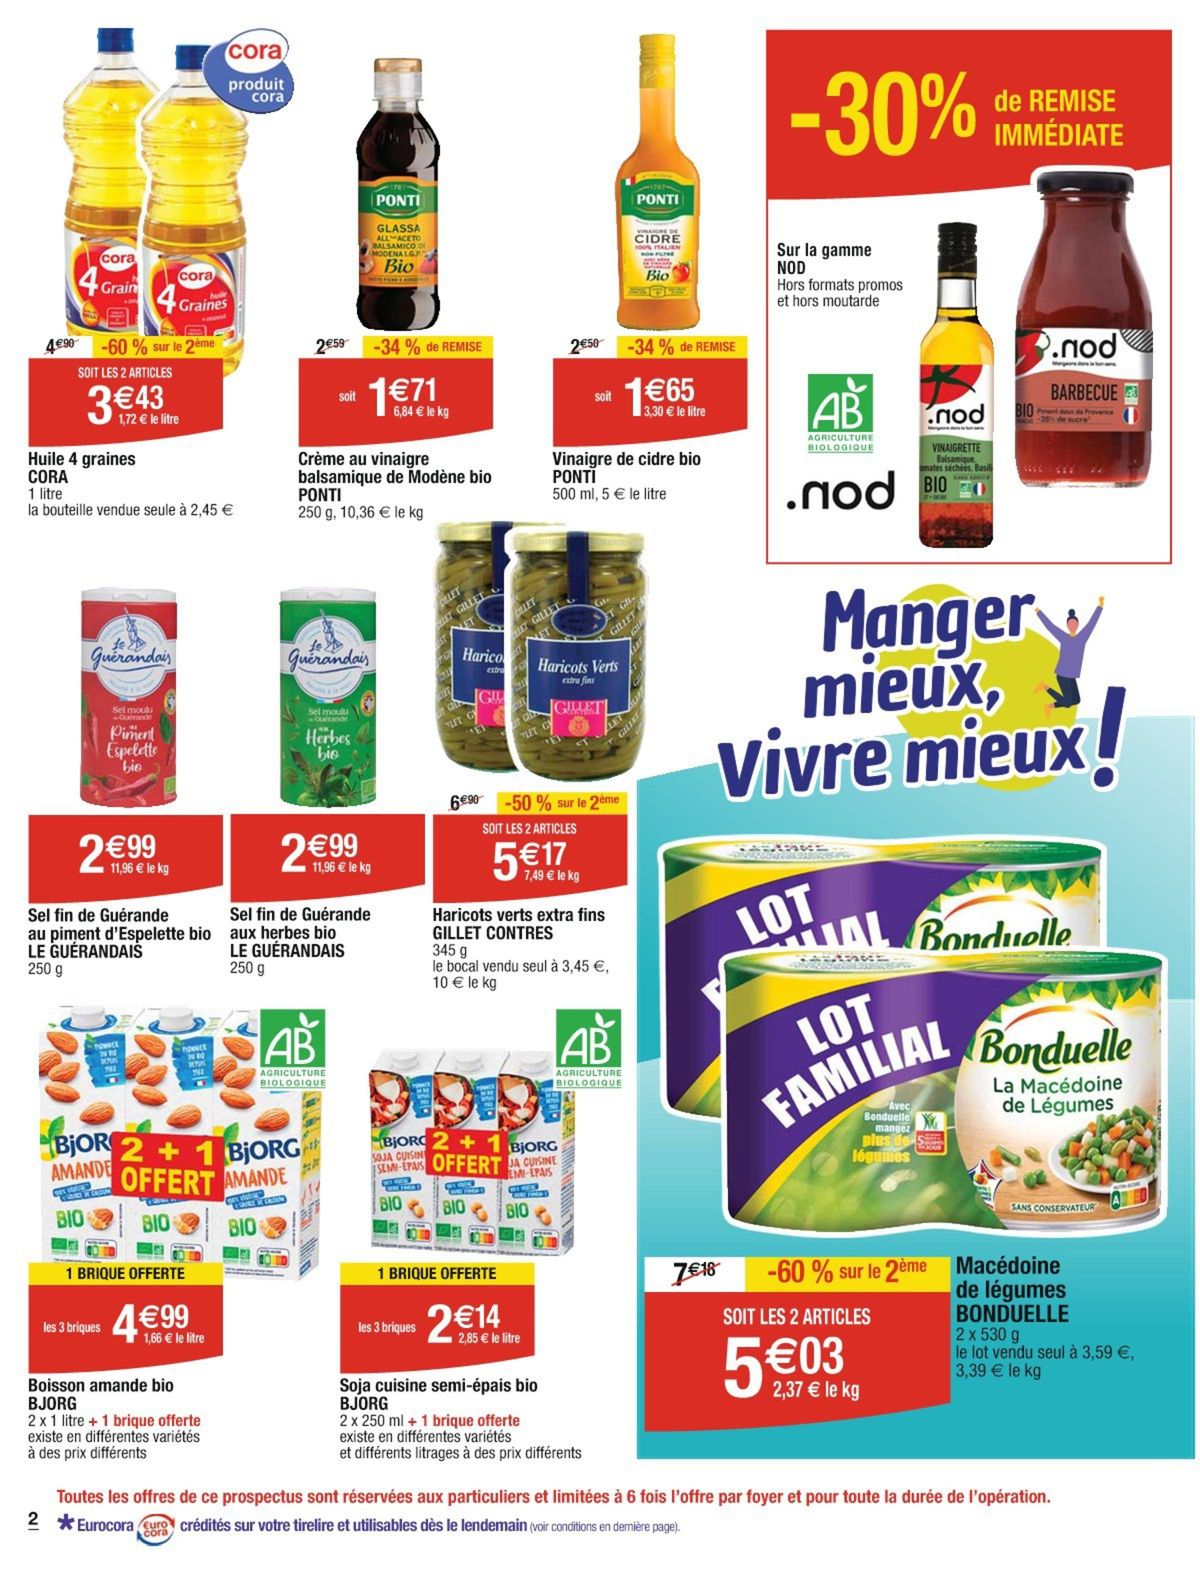 Catalogue Manger mieux, vivre mieux !, page 00012